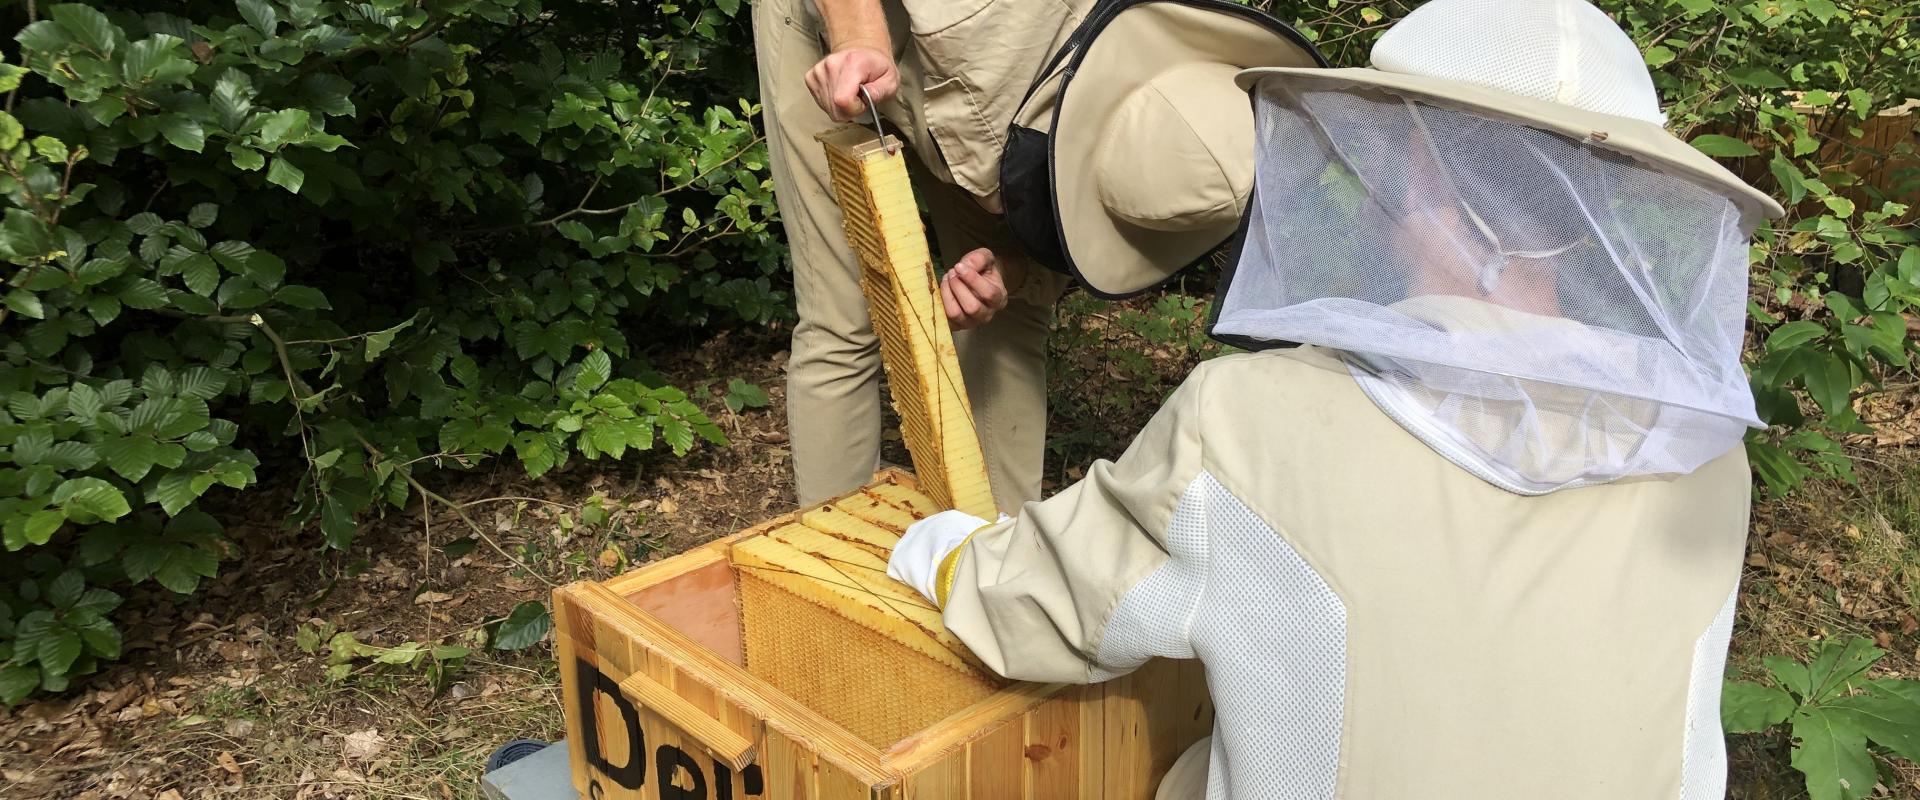 Delia Cosmetics buduje ul w wyjątkowym projekcie Inteligent Hives